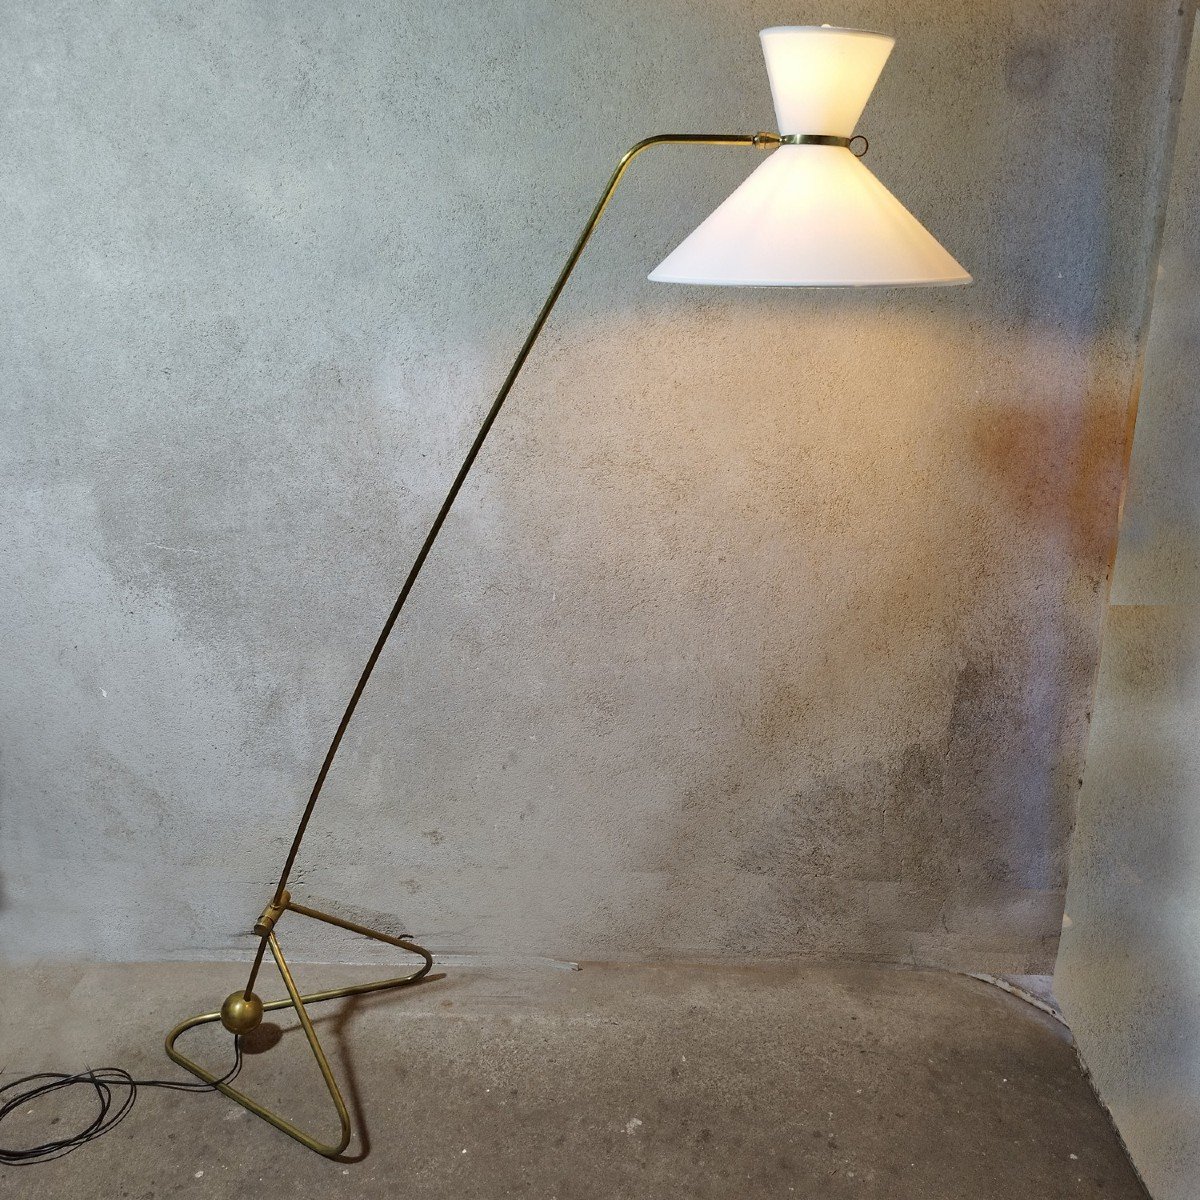 Proantic: Grande Lampe ėpoque 60/70 Design Vintage Lampadaire Luminai